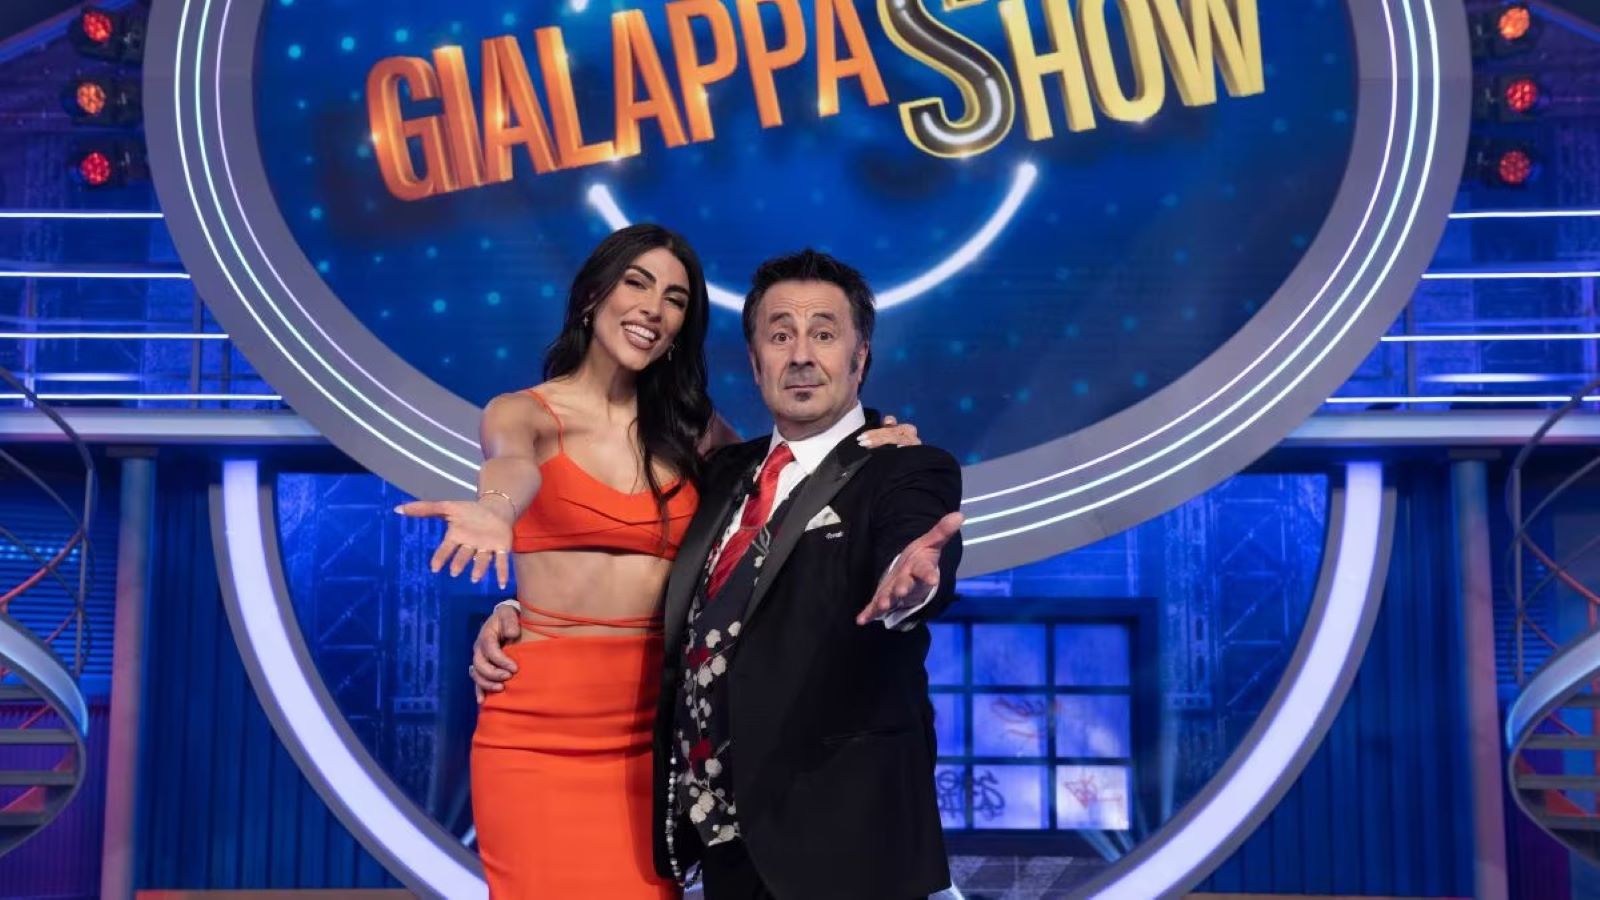 GialappaShow, Mago Forest e  Giulia Salemi conducono la puntata dell'11 giugno: anticipazioni ed ospiti